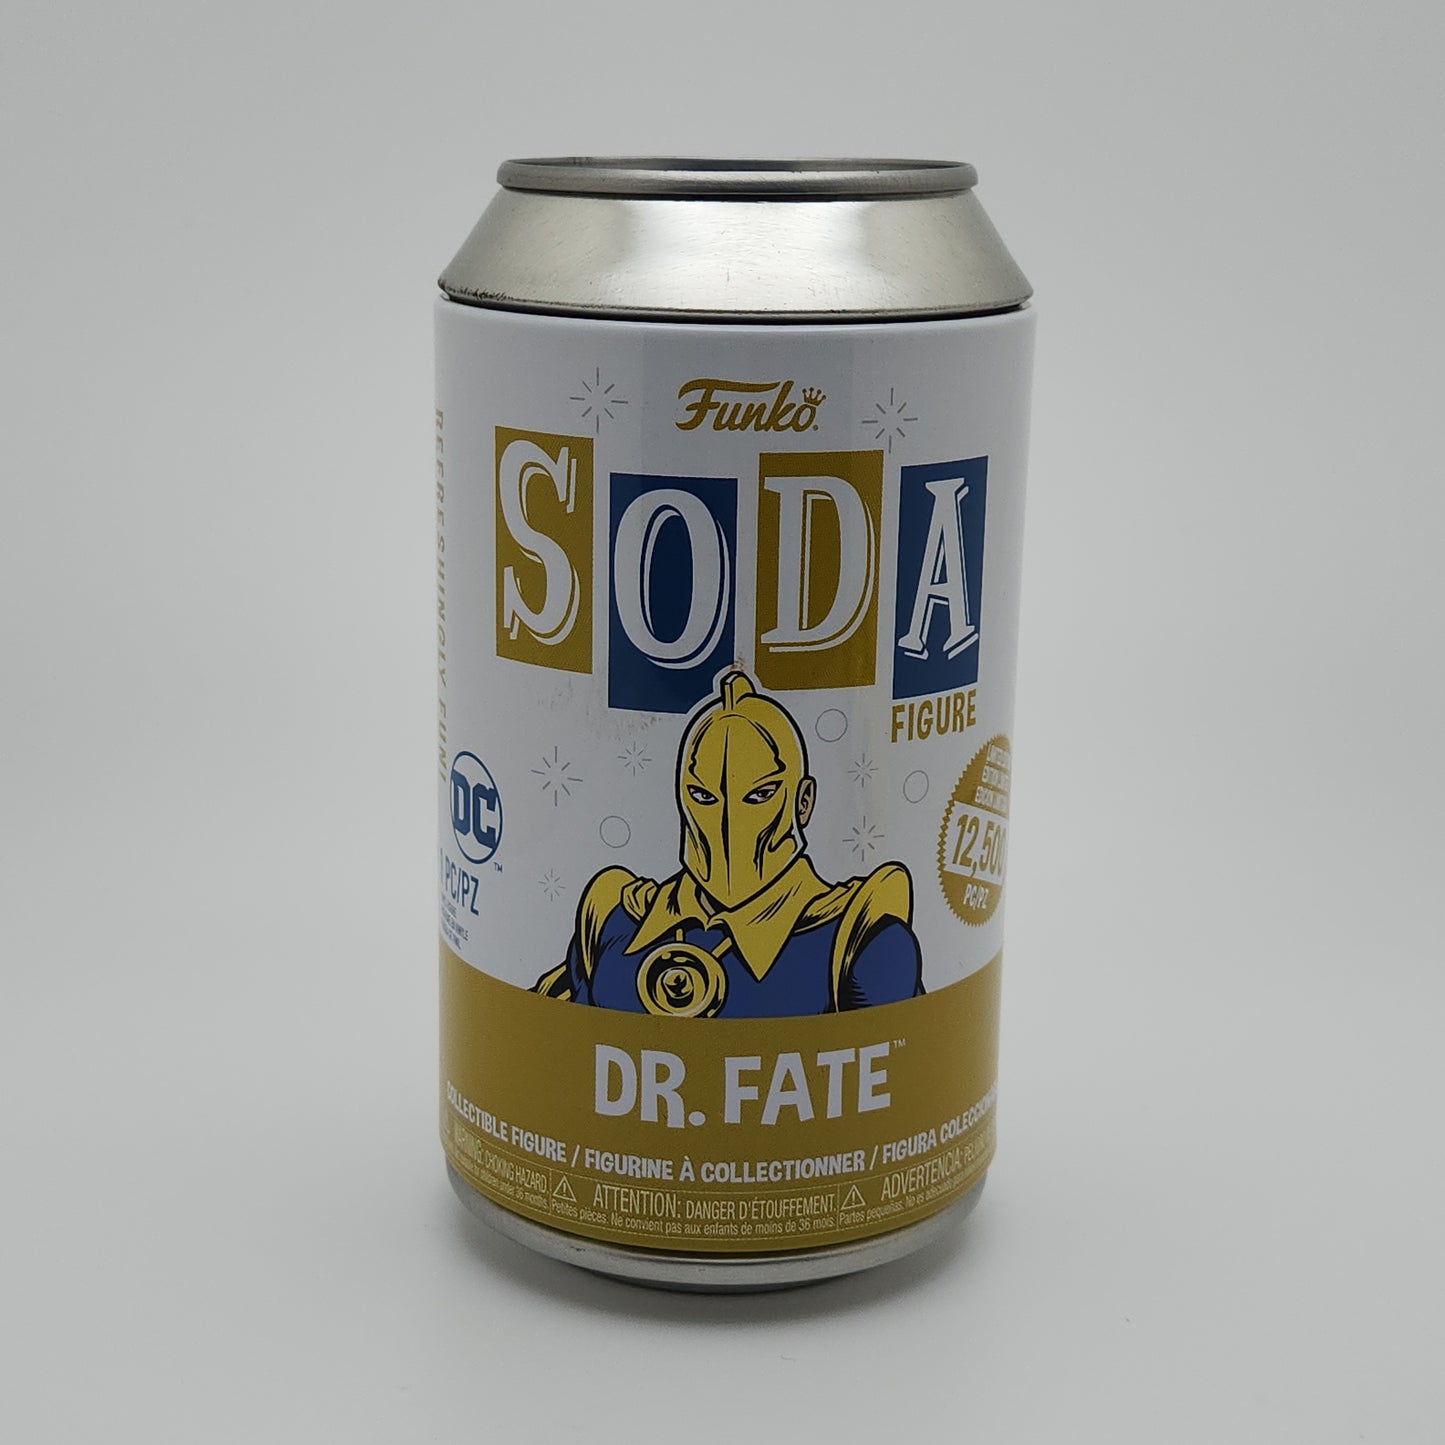 Funko Soda- Doctor Fate